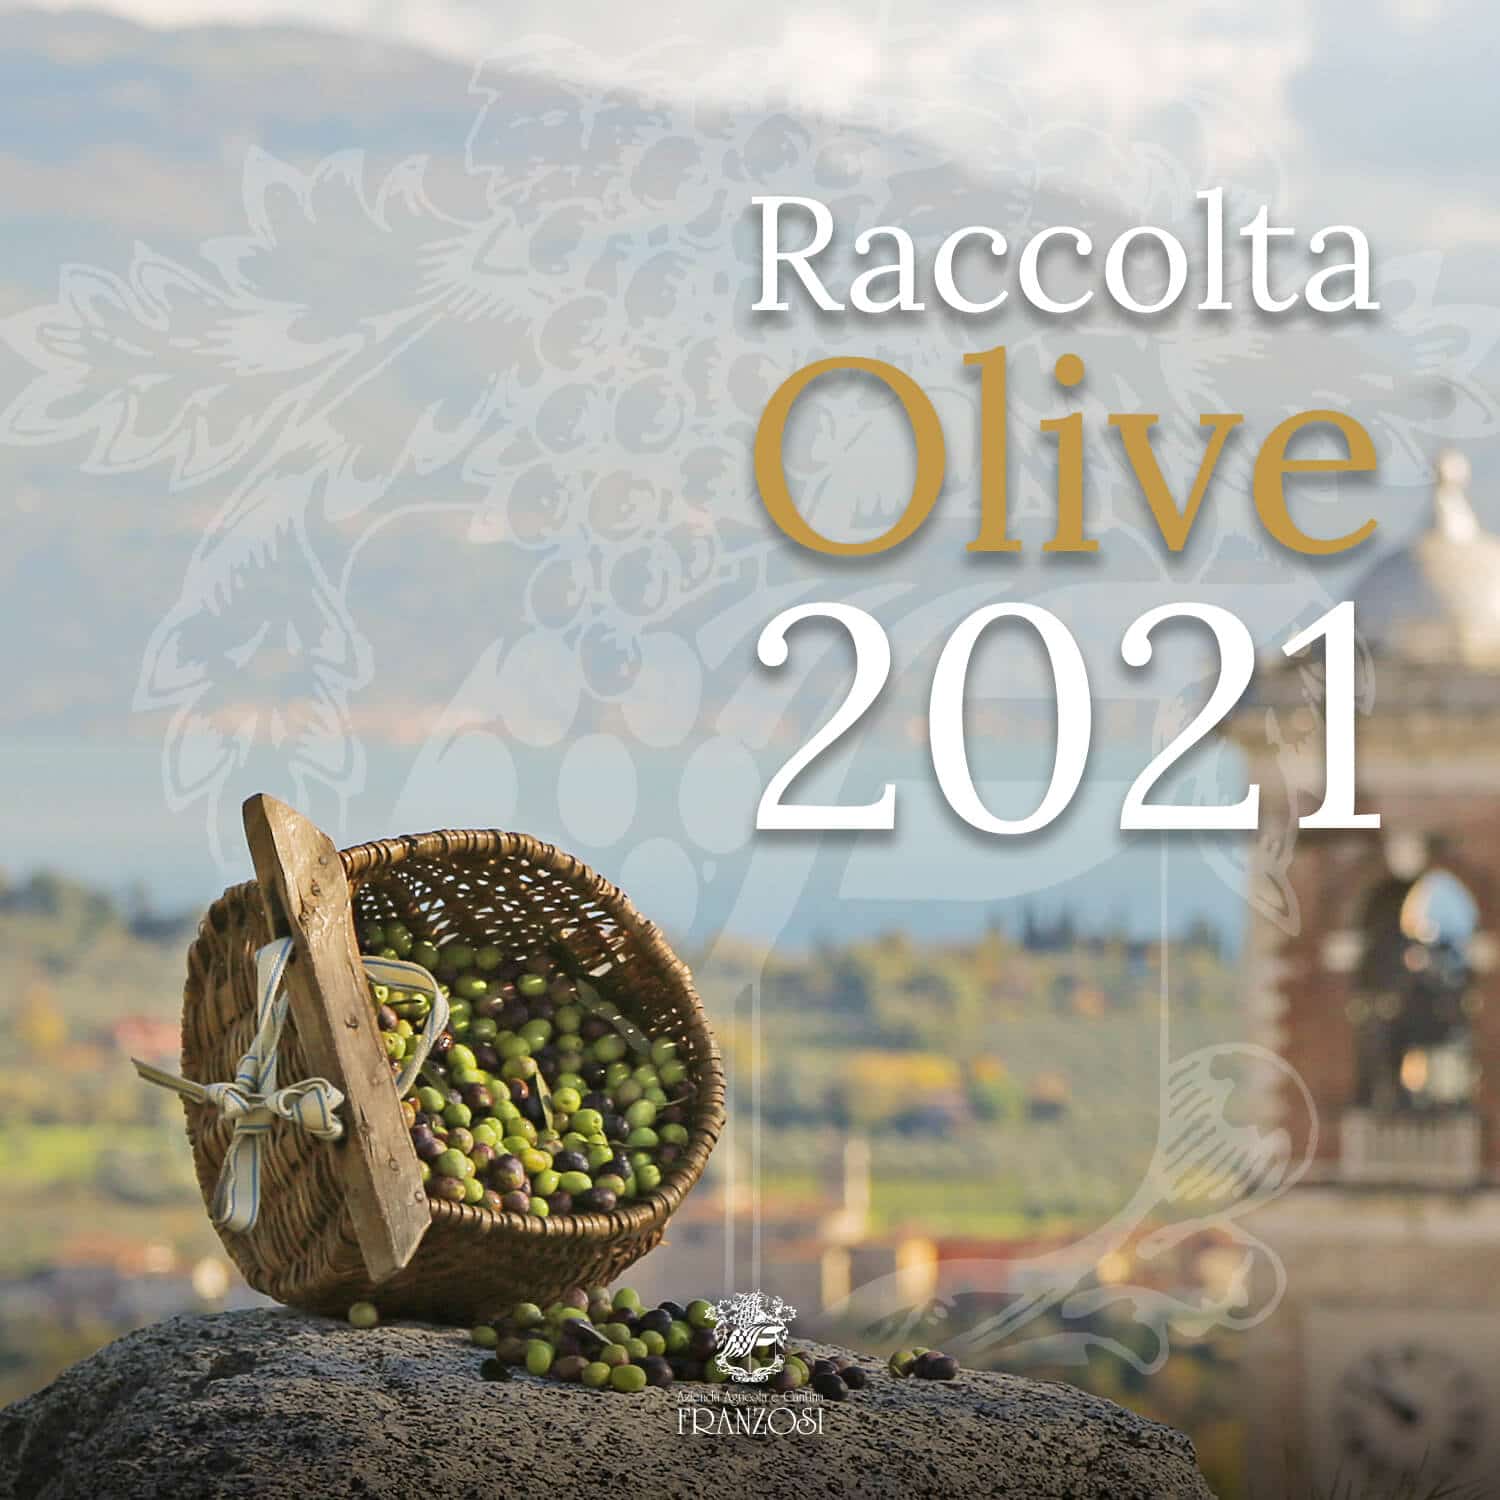 La raccolta delle olive in Valtènesi - 2021